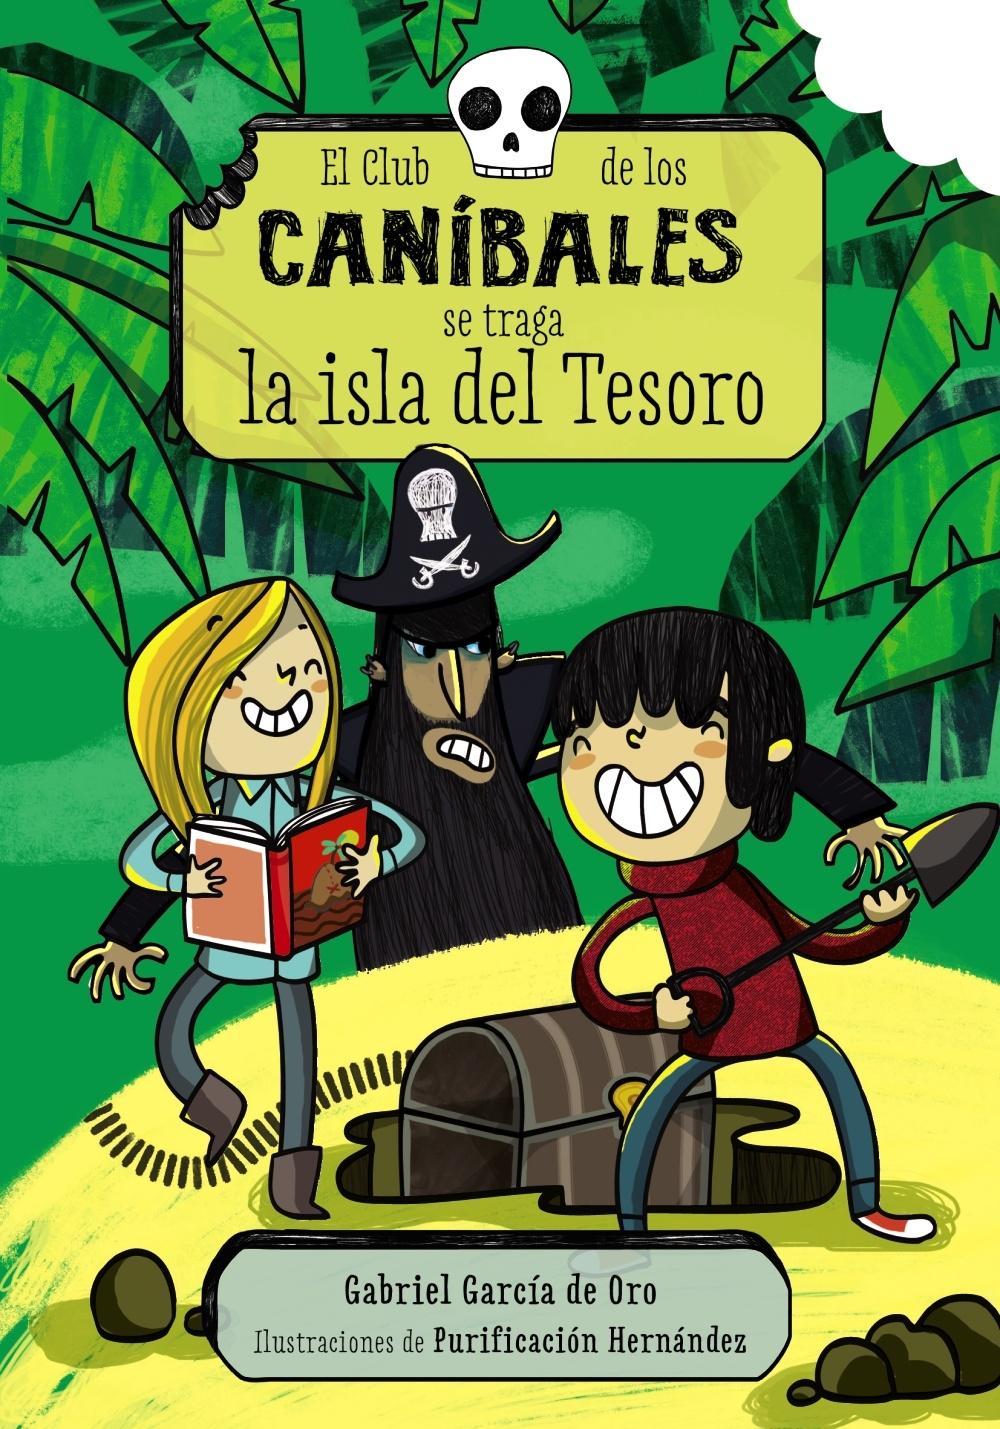 El Club de los Caníbales se traga la isla del Tesoro "El Club de los Caníbales, 3". 